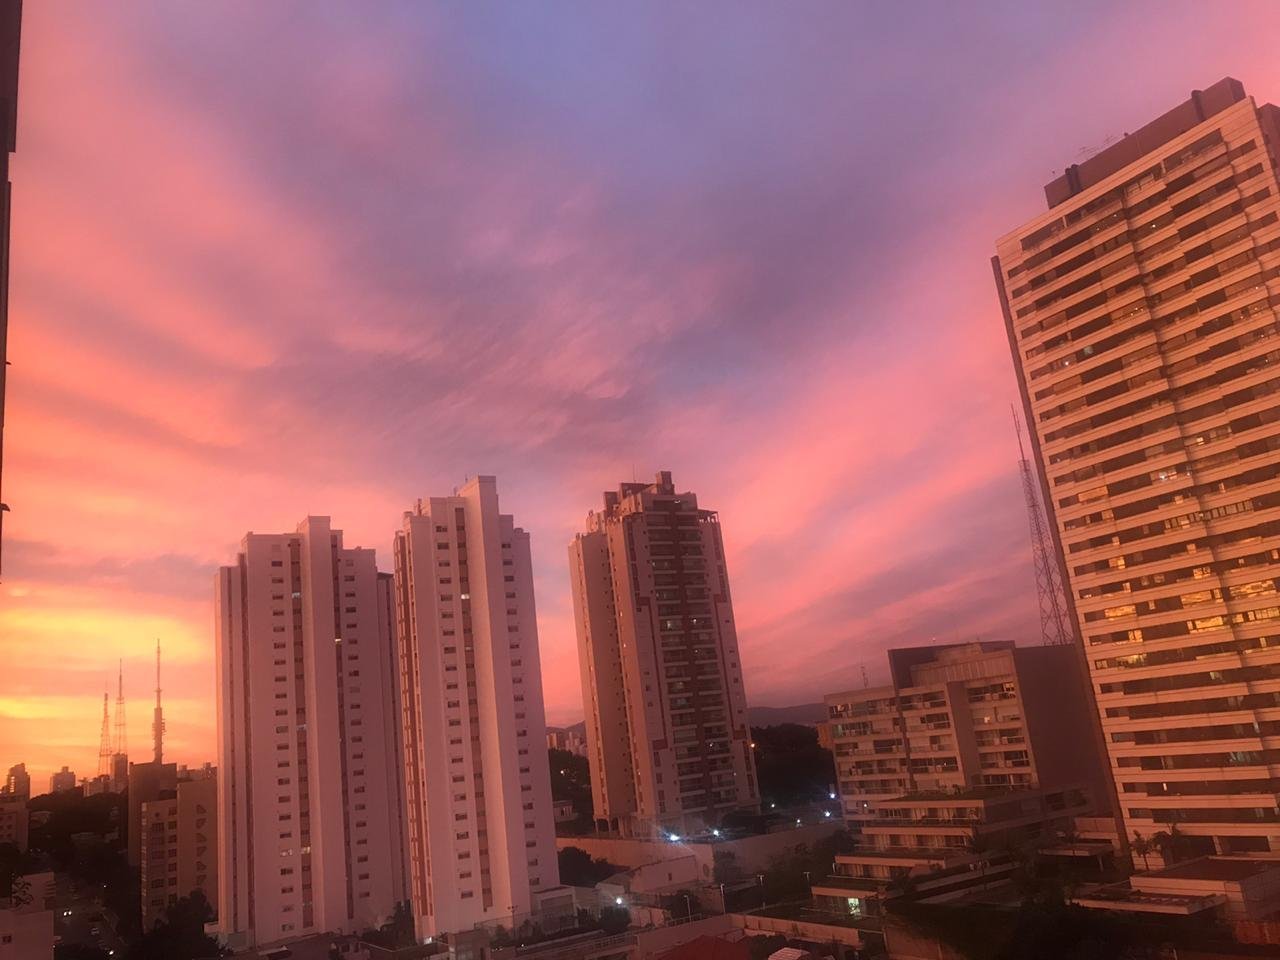 Fim de tarde em São Paulo